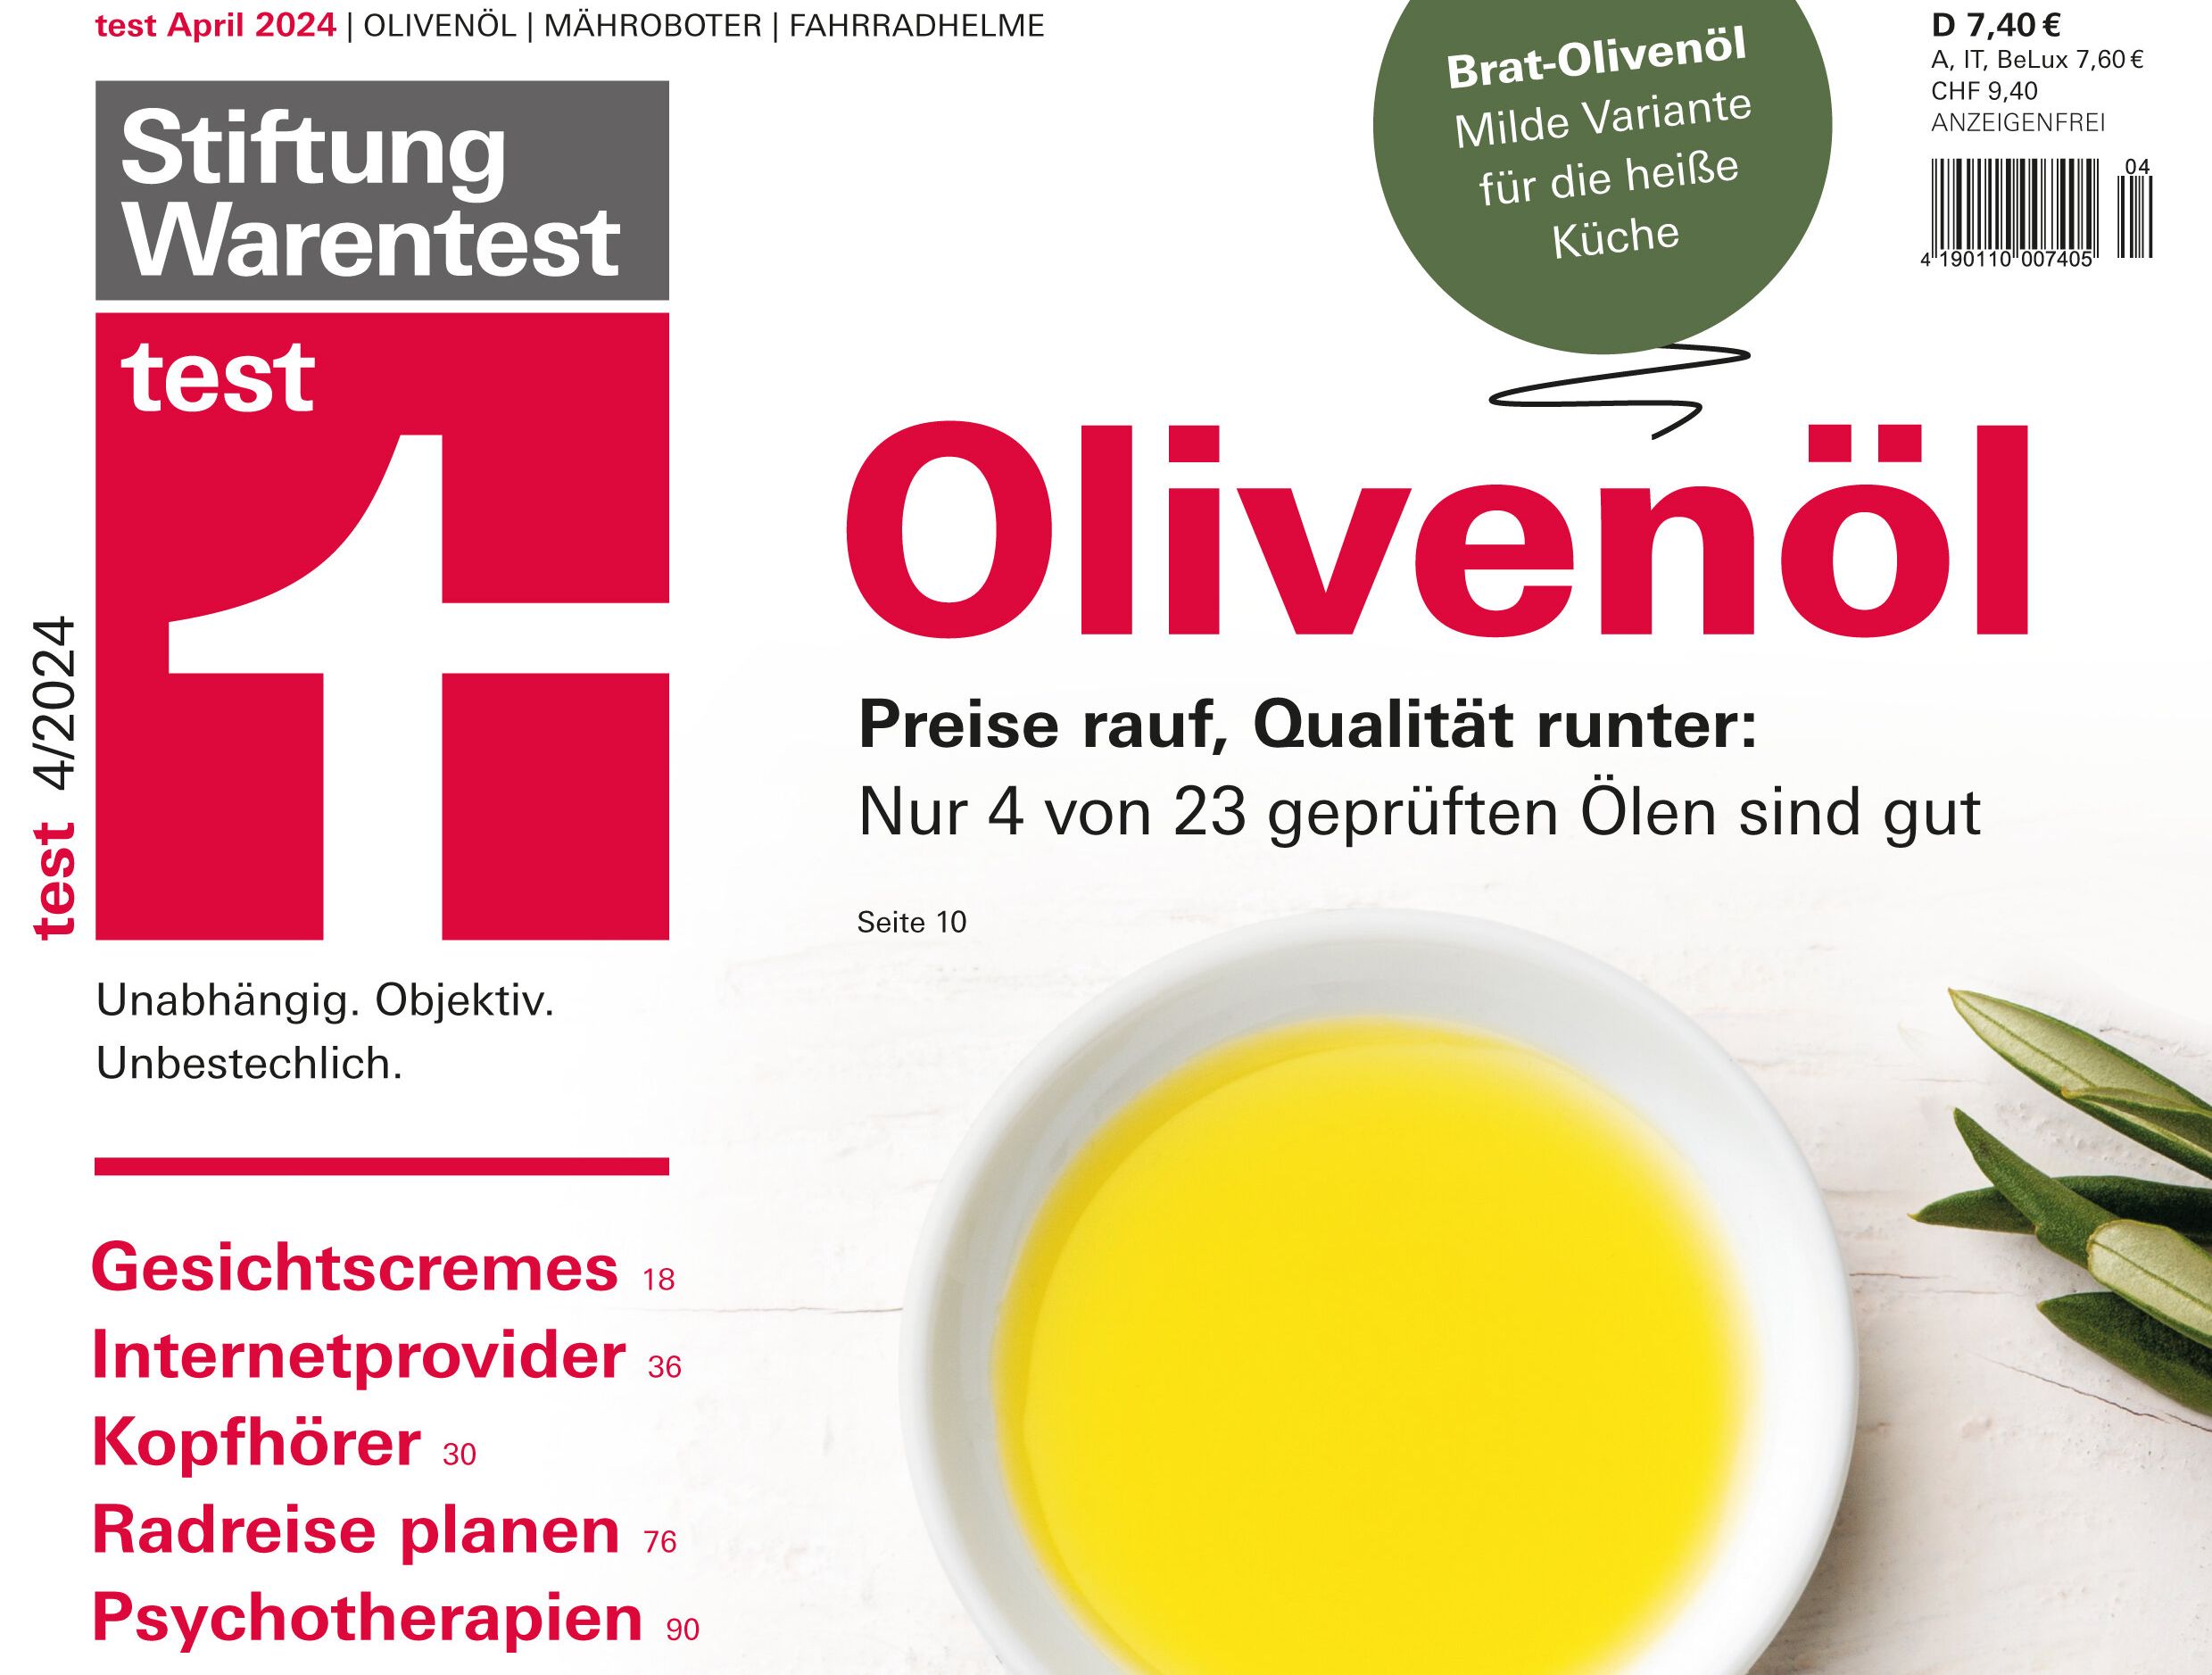 Olivenöl-Test: Rewe-Produkt unter den Top3, Bio schmiert ab